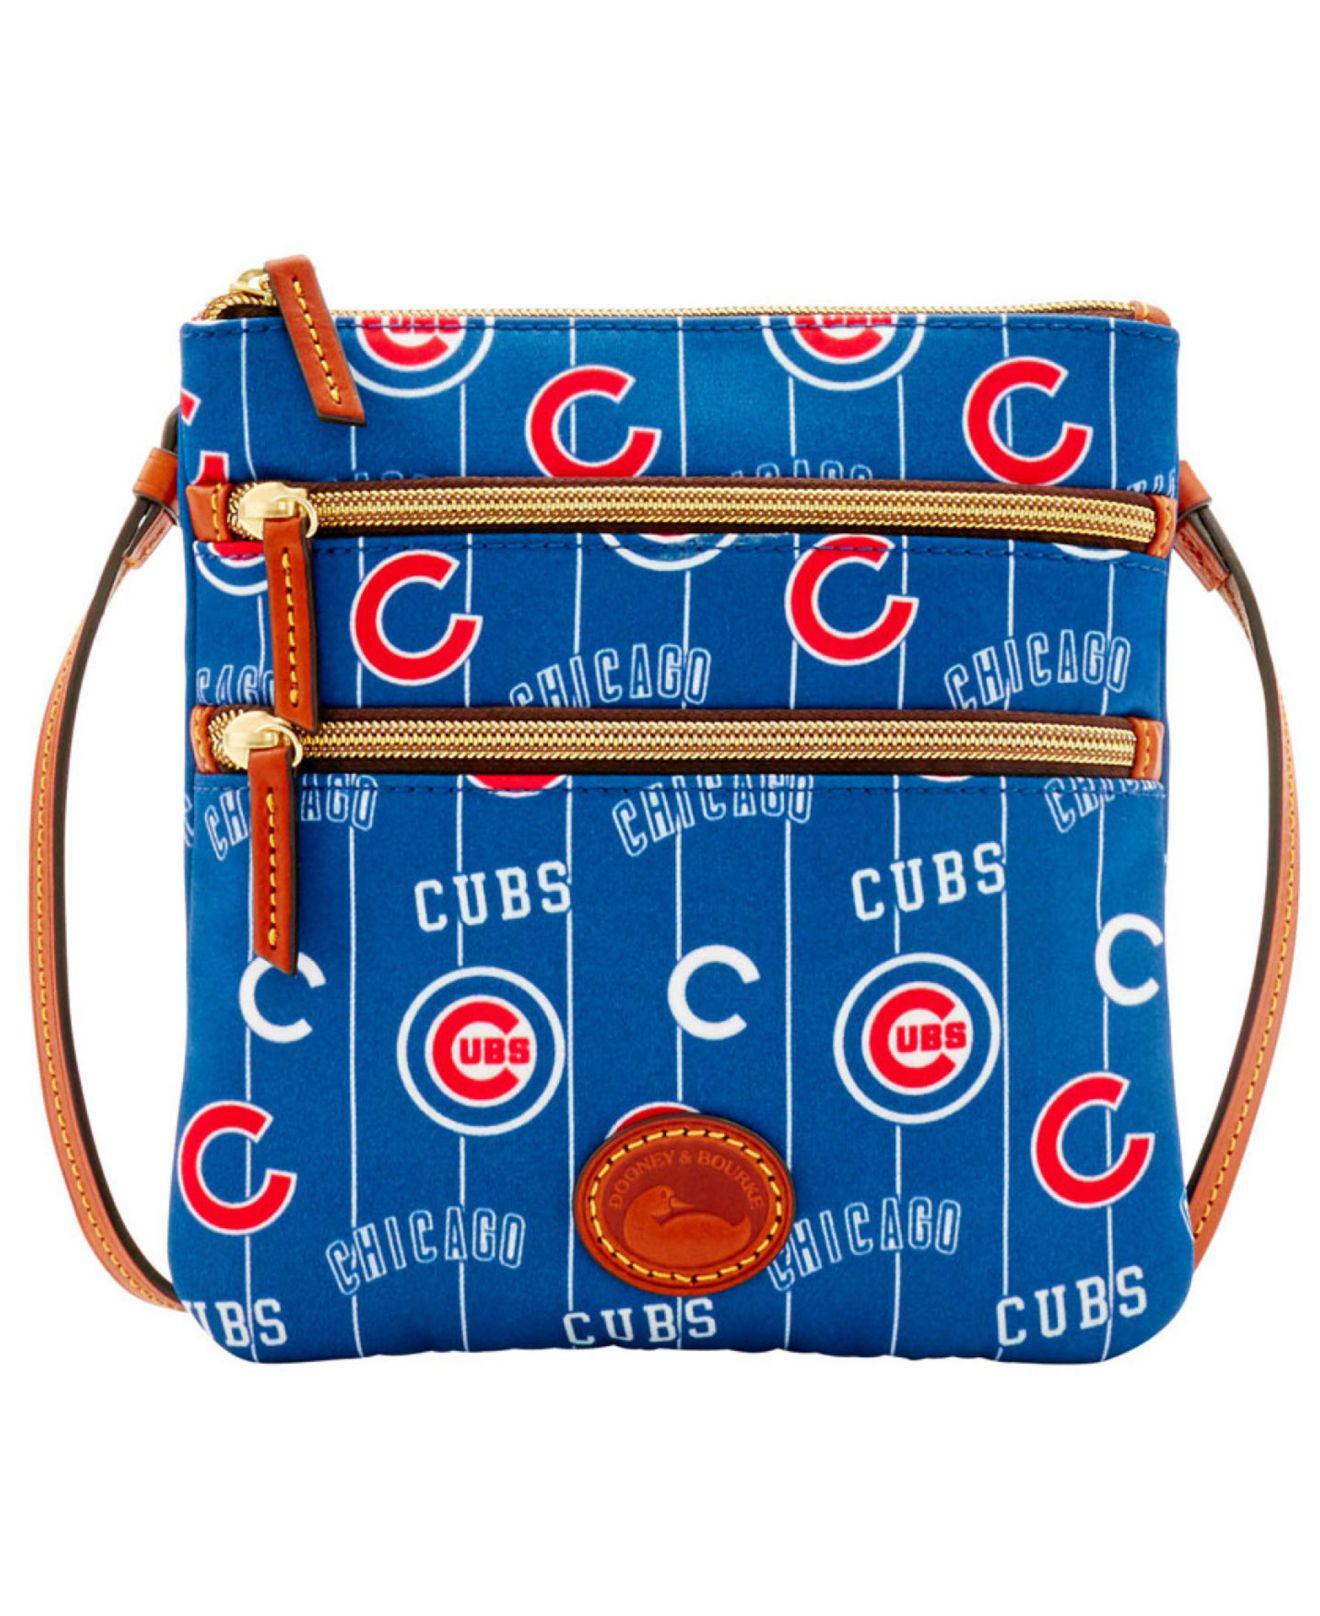 Dooney & Bourke Chicago Crossbody Bags